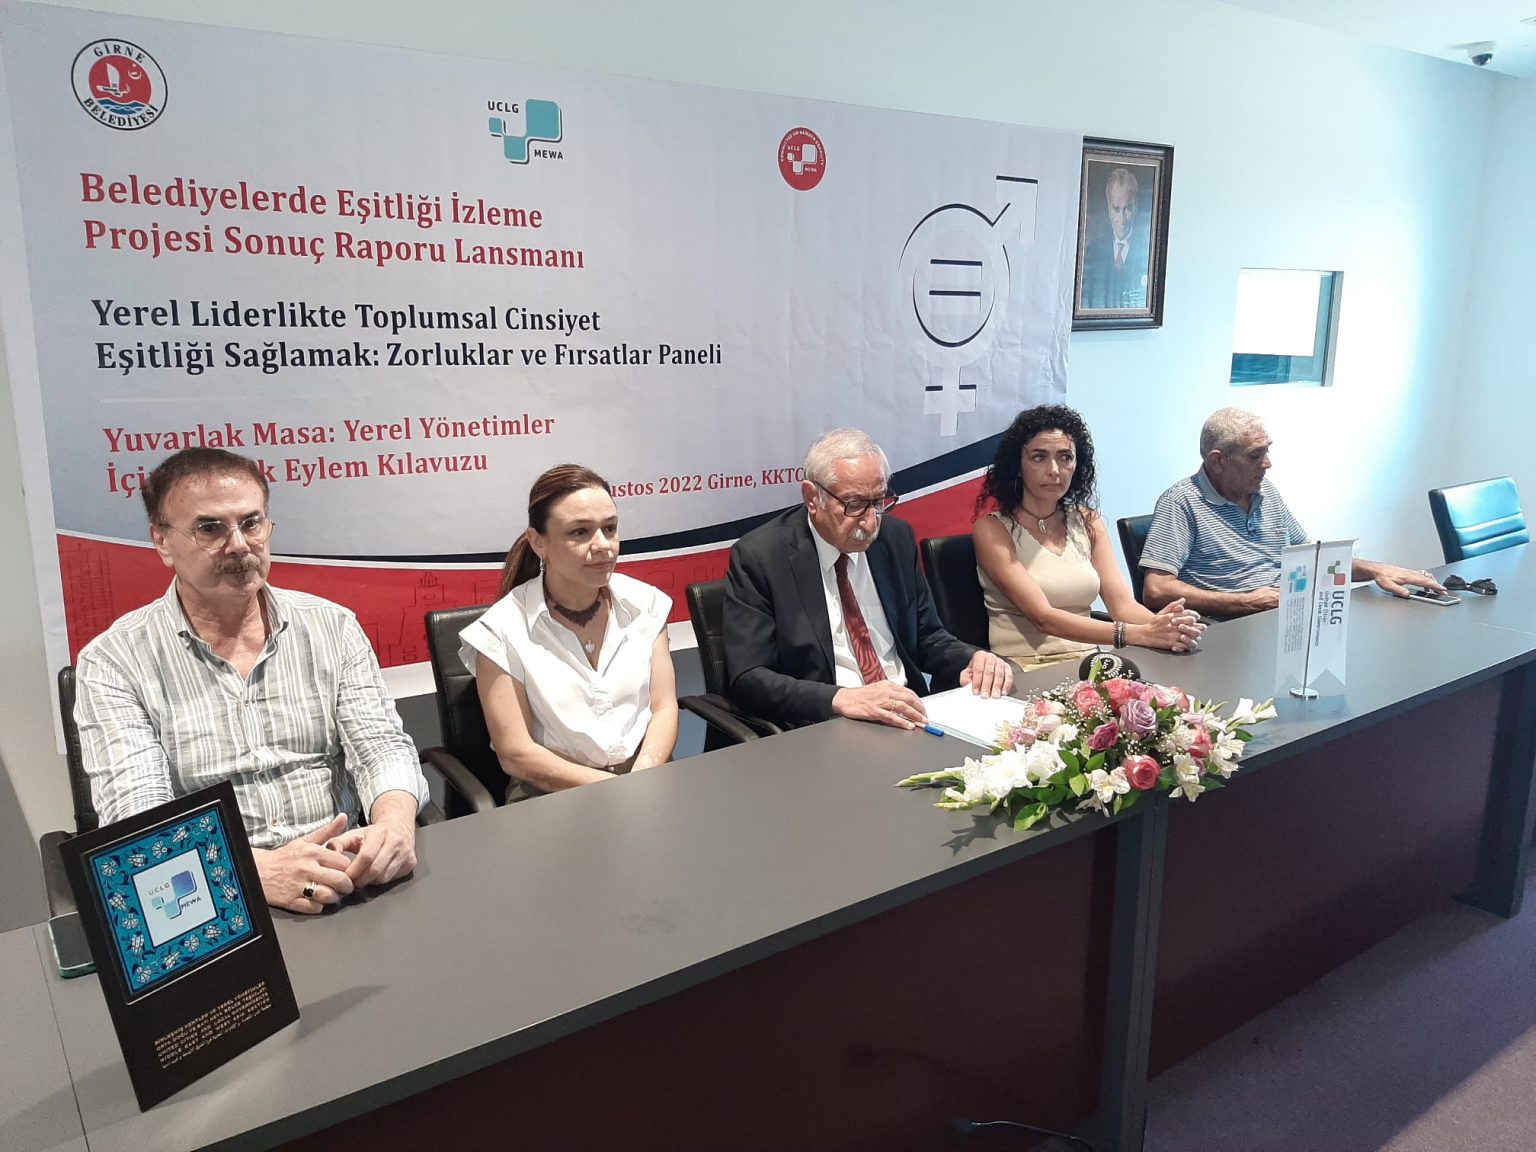 Girne Belediyesi, yerel yönetimlerde cinsiyet eşitliğinin tartışılacağı uluslararası bir organizasyona imza atıyor